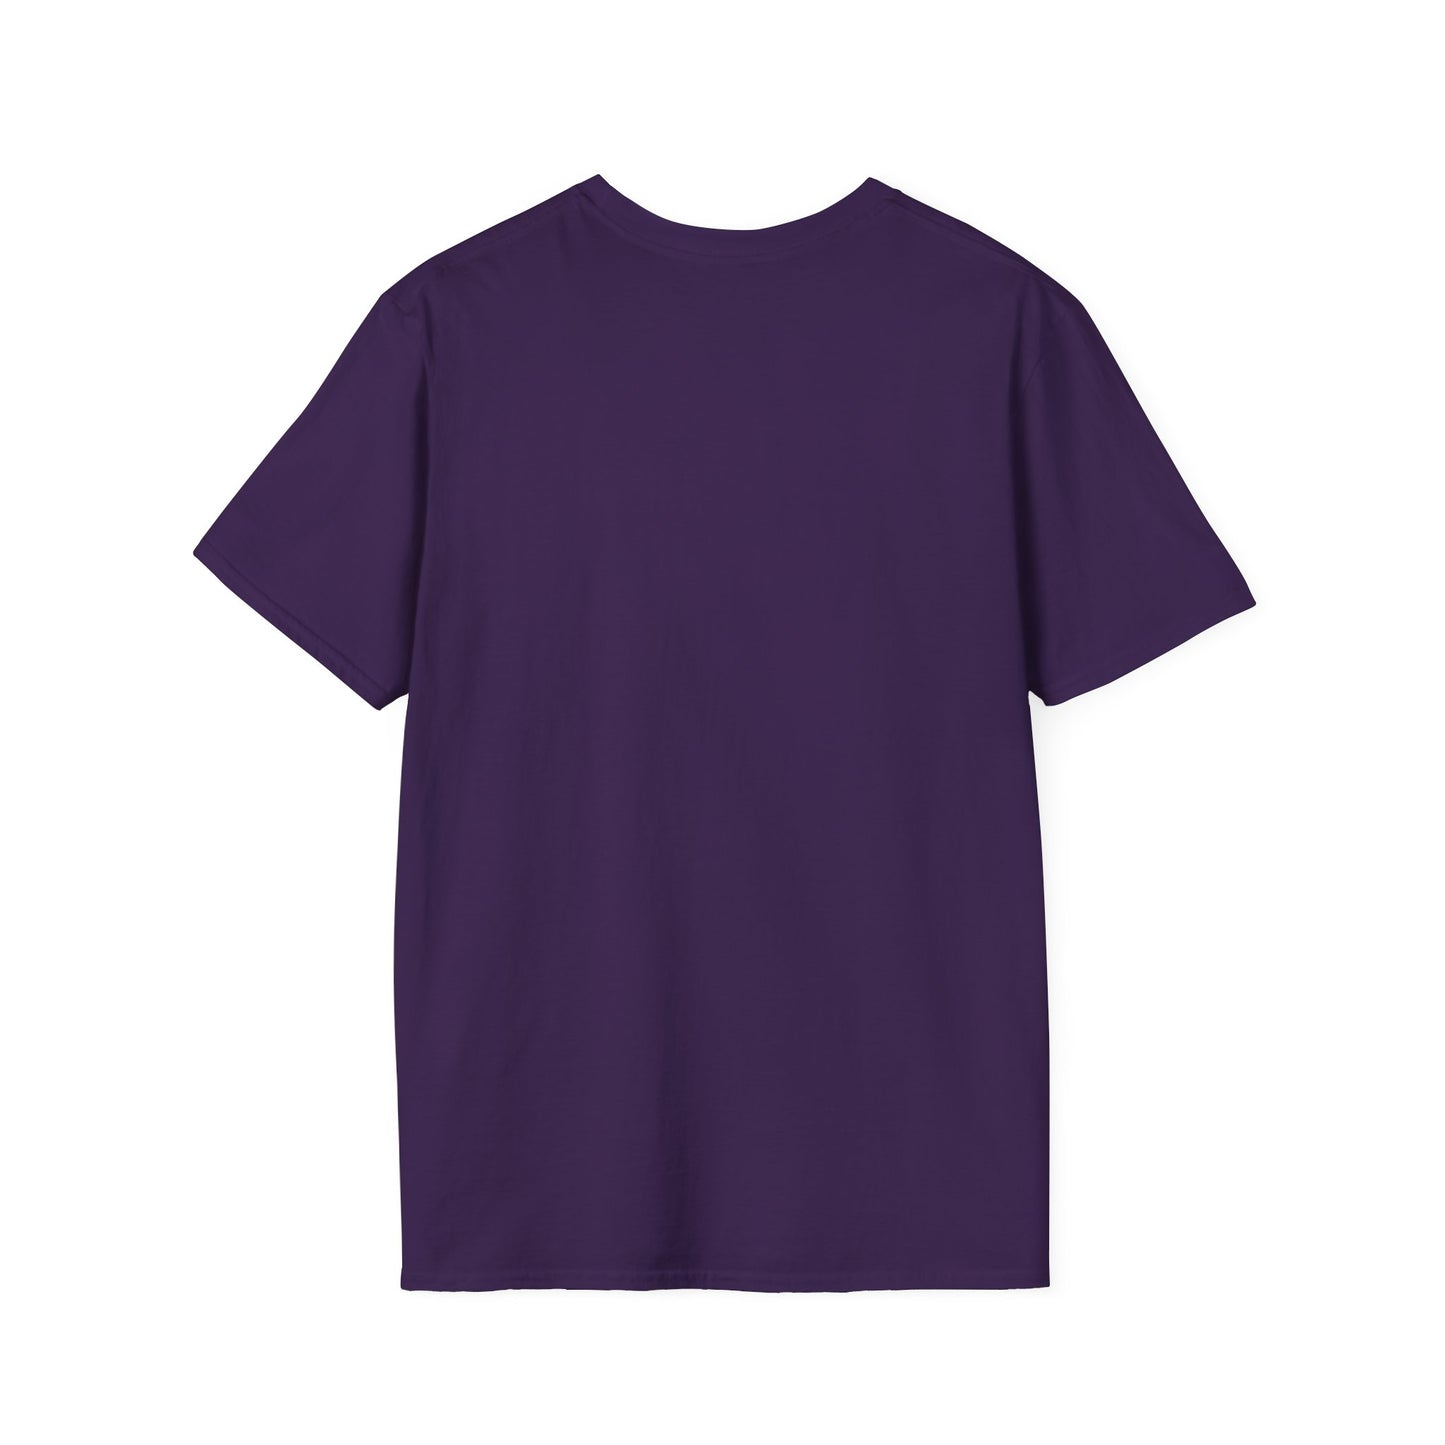 Unisex Soft-Style T-Shirt